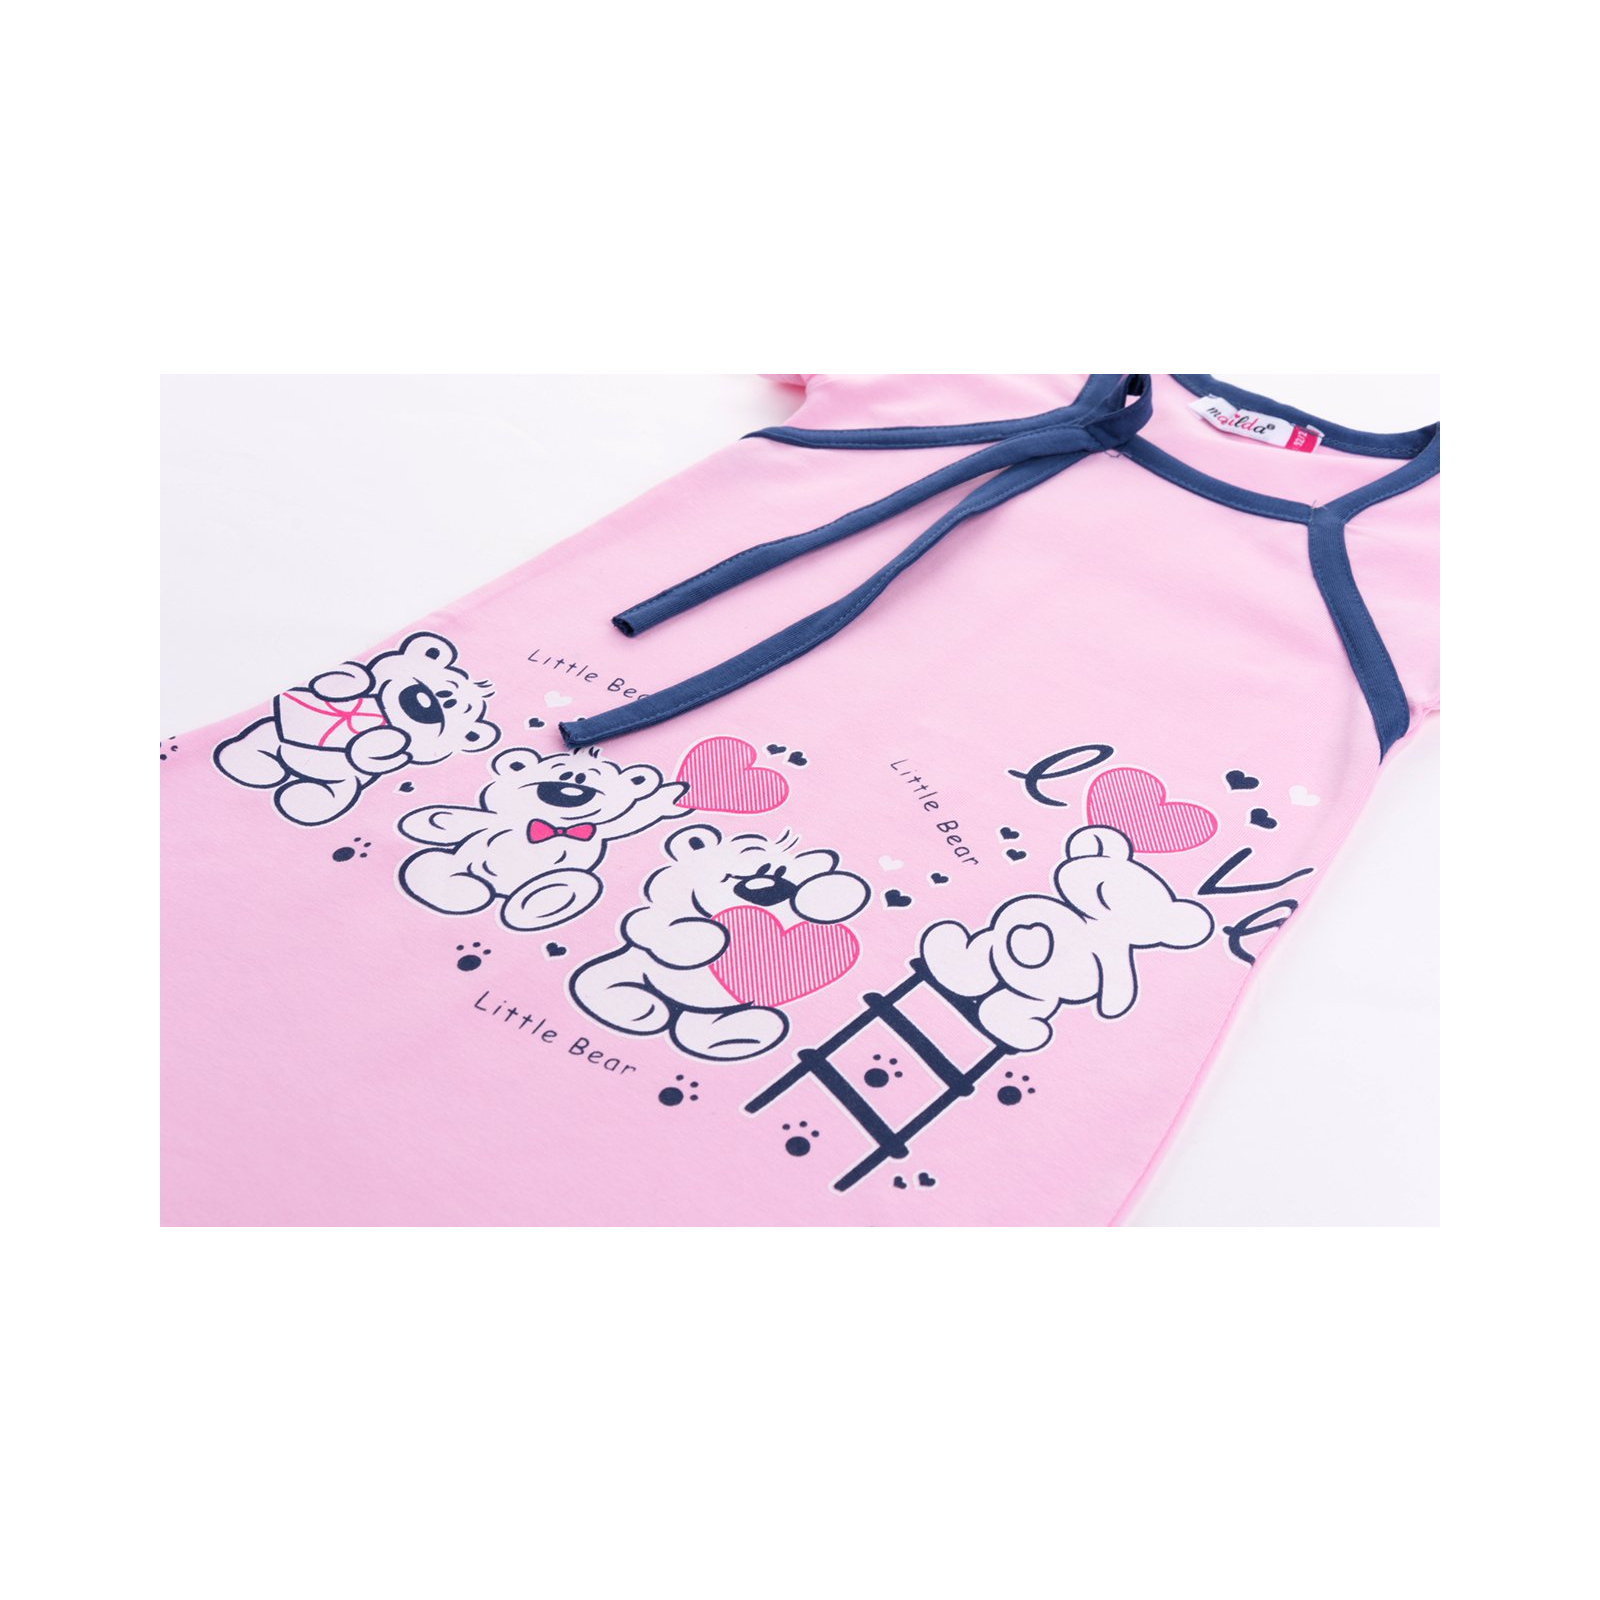 Пижама Matilda и халат с мишками "Love" (7445-176G-pink) изображение 8